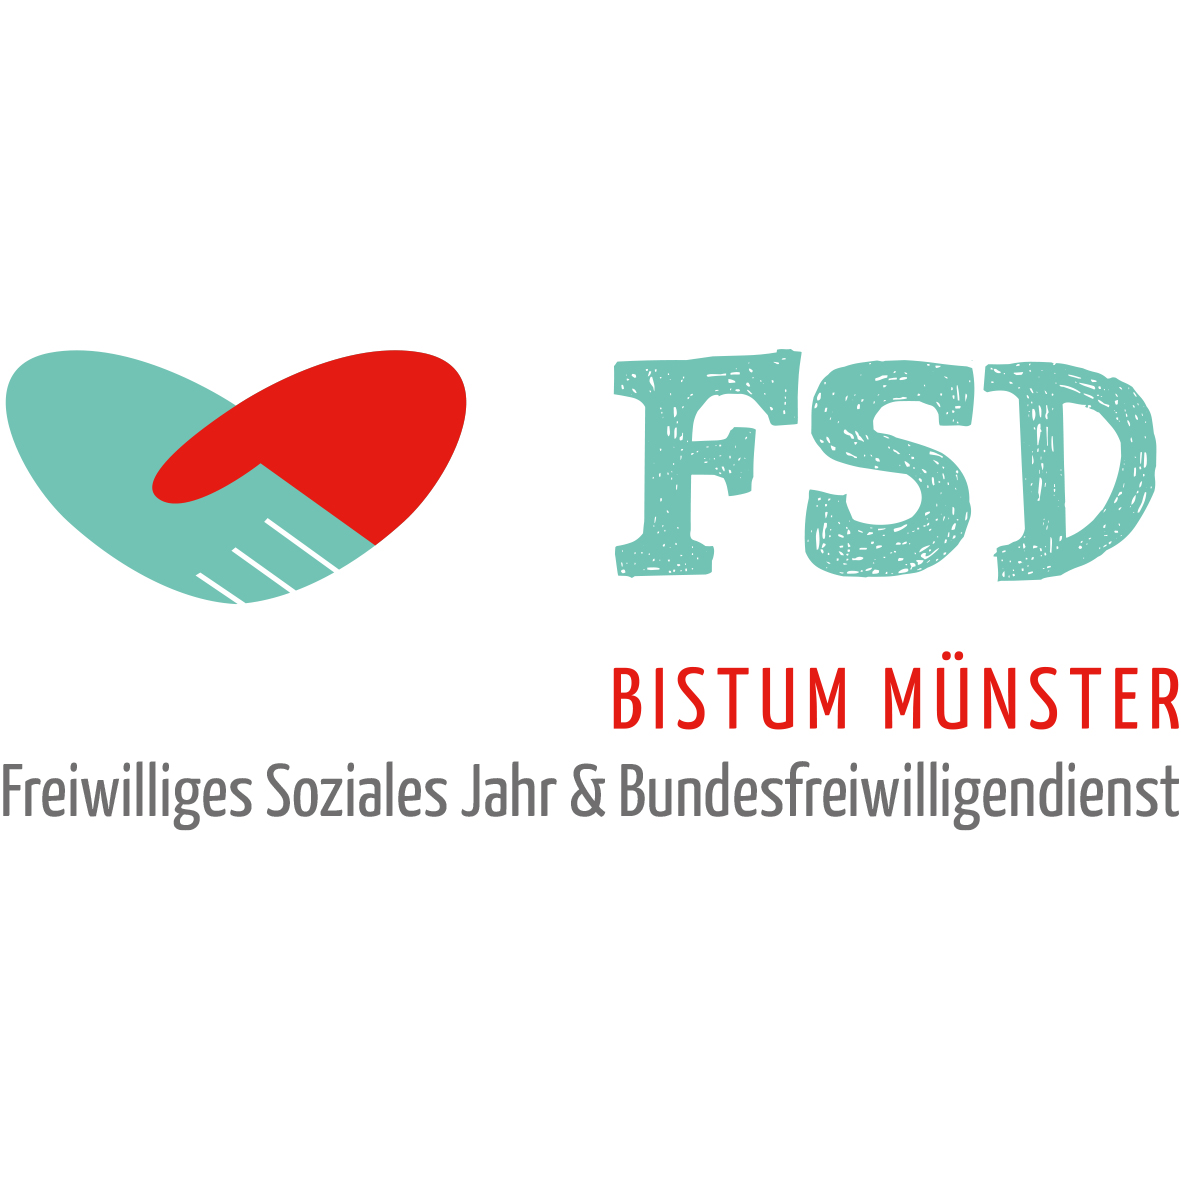 Freiwillige Soziale Dienste (FSD) Bistum Münster gGmbH